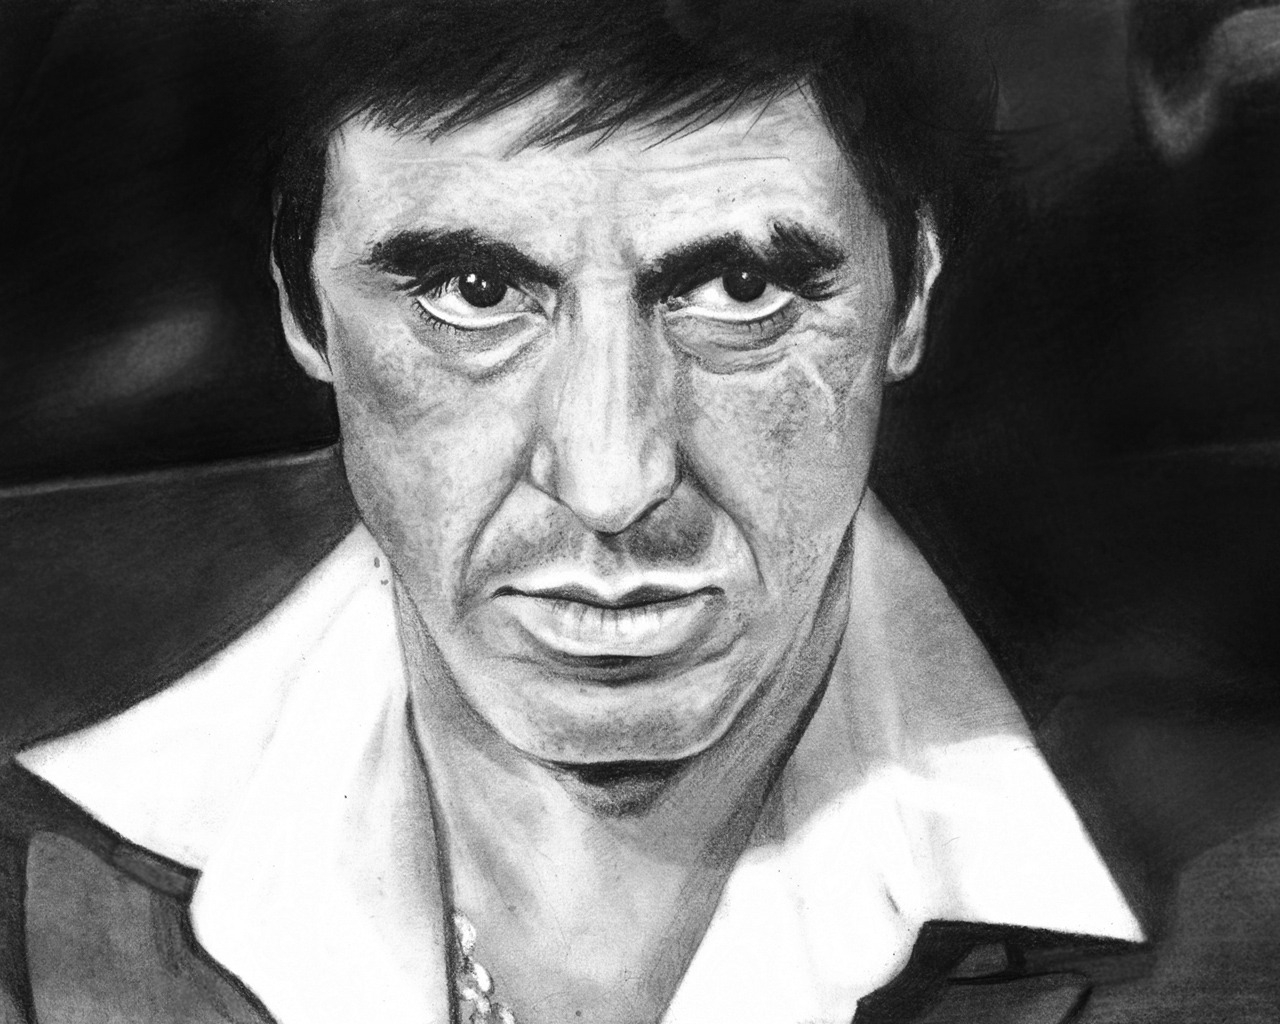 Al Pacino Scarface Fan Art for 1280 x 1024 resolution